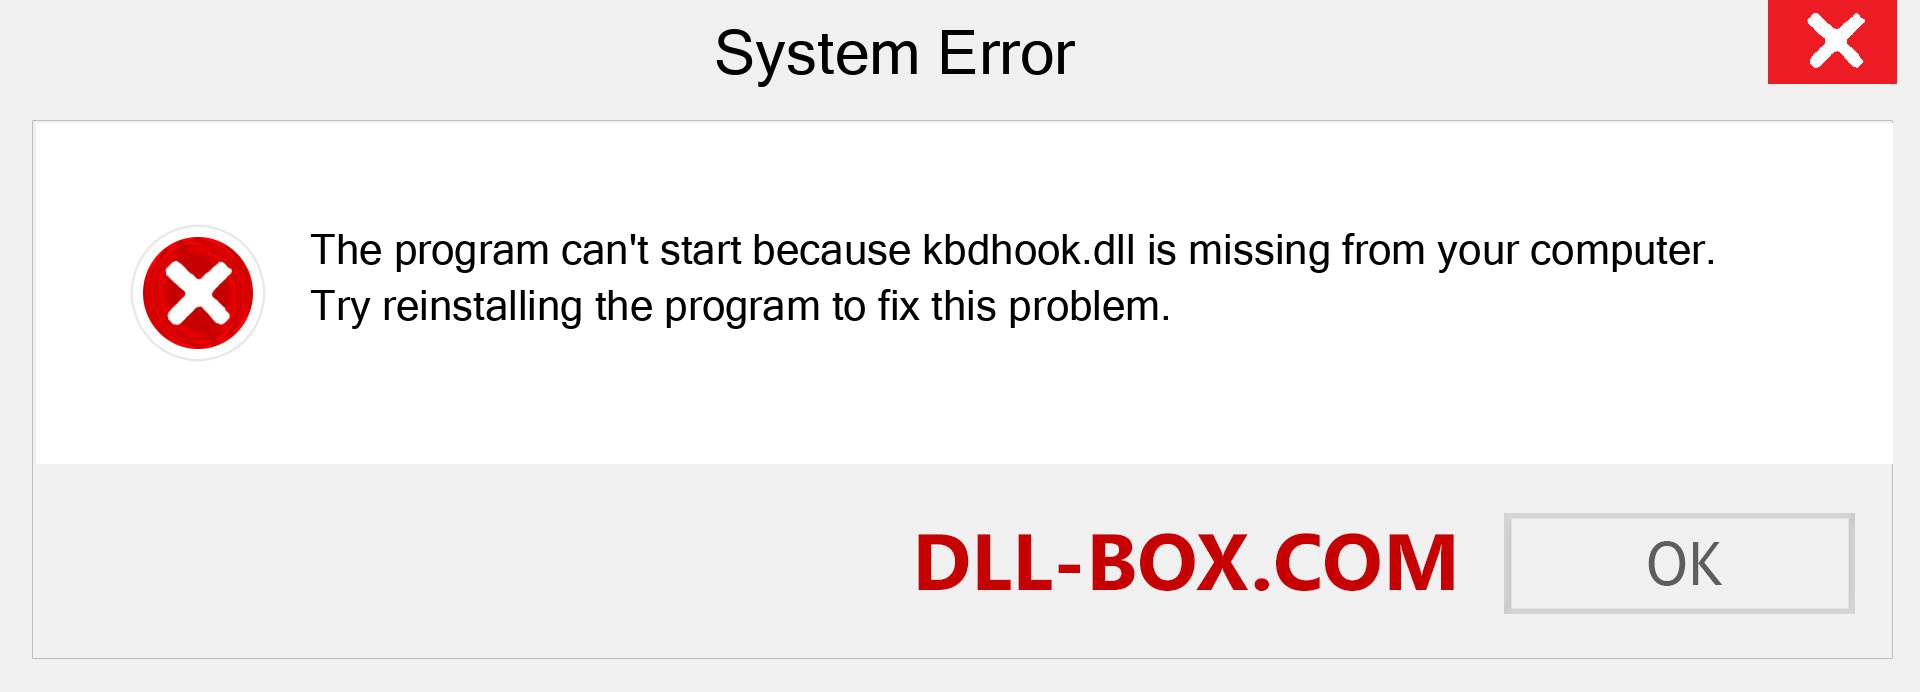  kbdhook.dll file is missing?. Download for Windows 7, 8, 10 - Fix  kbdhook dll Missing Error on Windows, photos, images